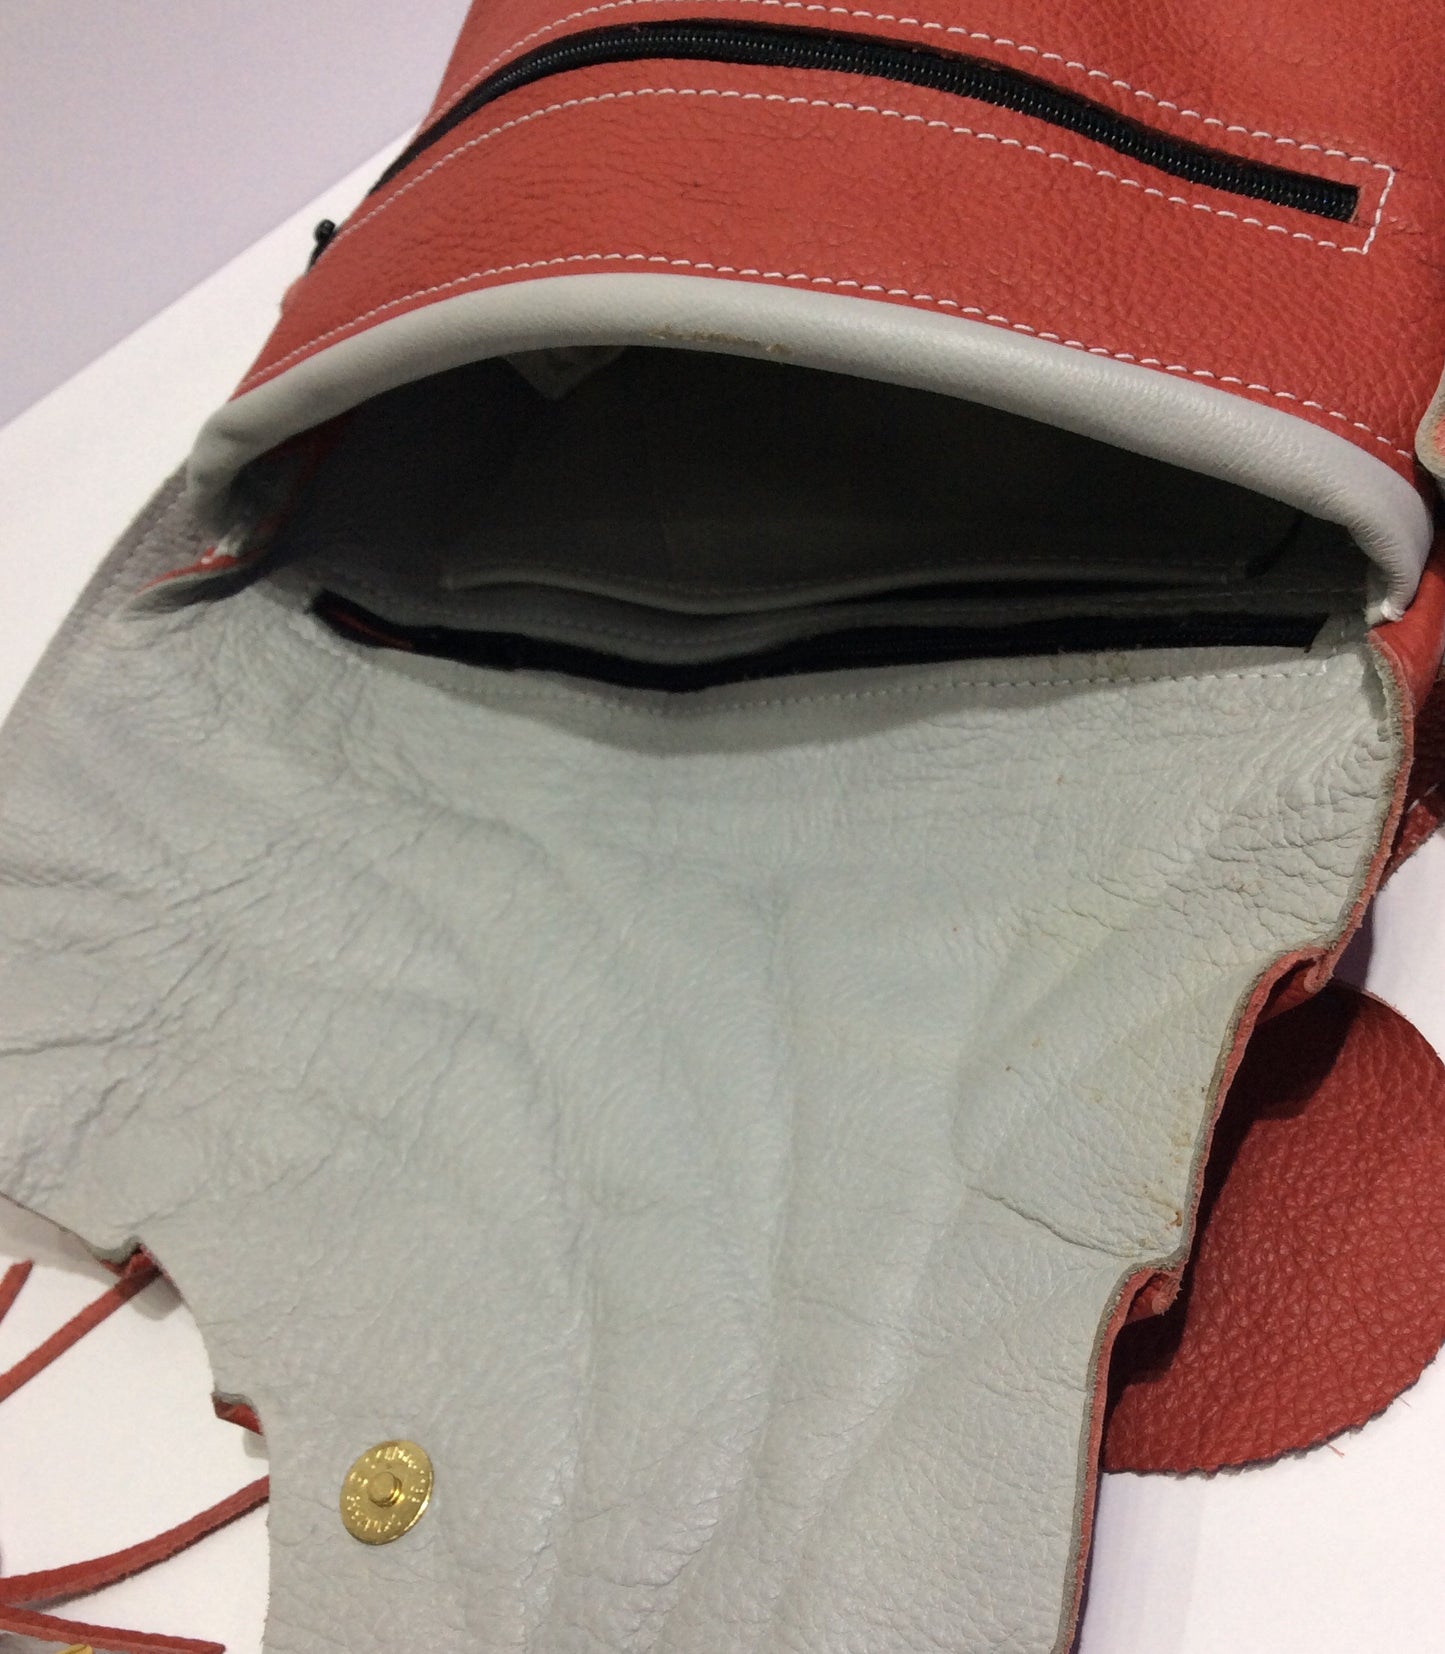 Handcrafted Leaf Design Italian Leather Shoulder Bag